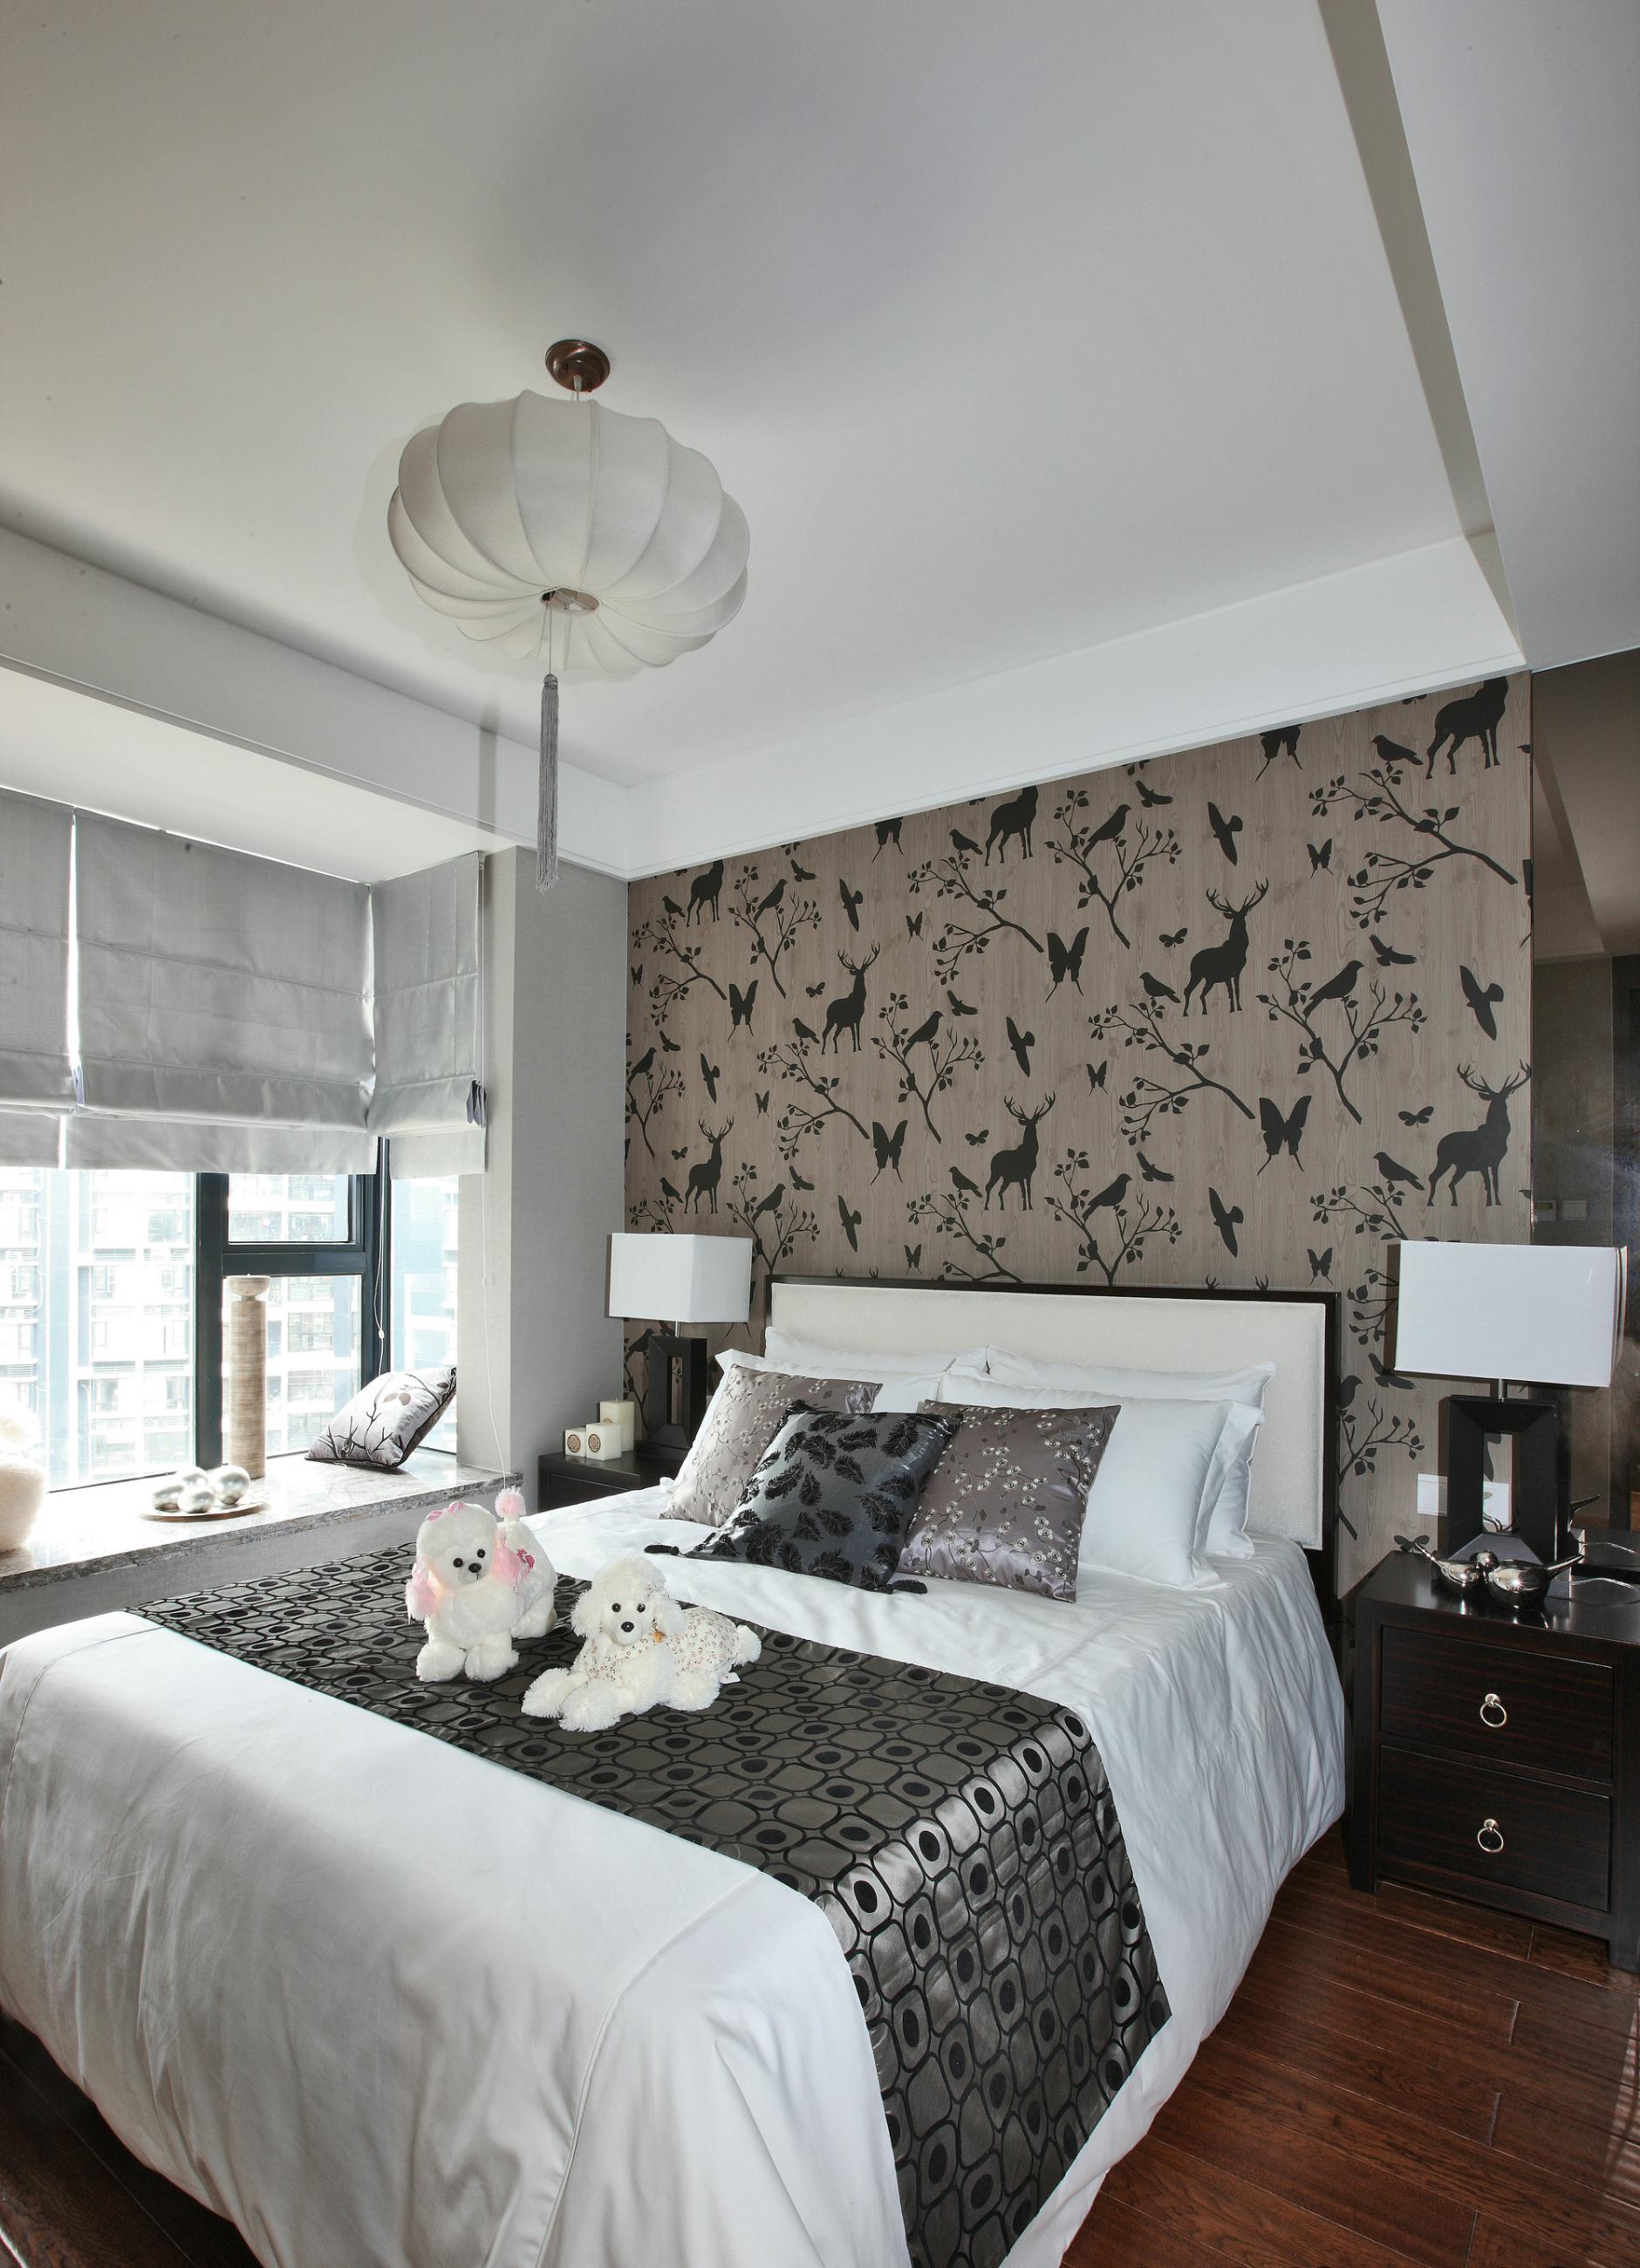 新中式风格的家居环境设计卧室风格